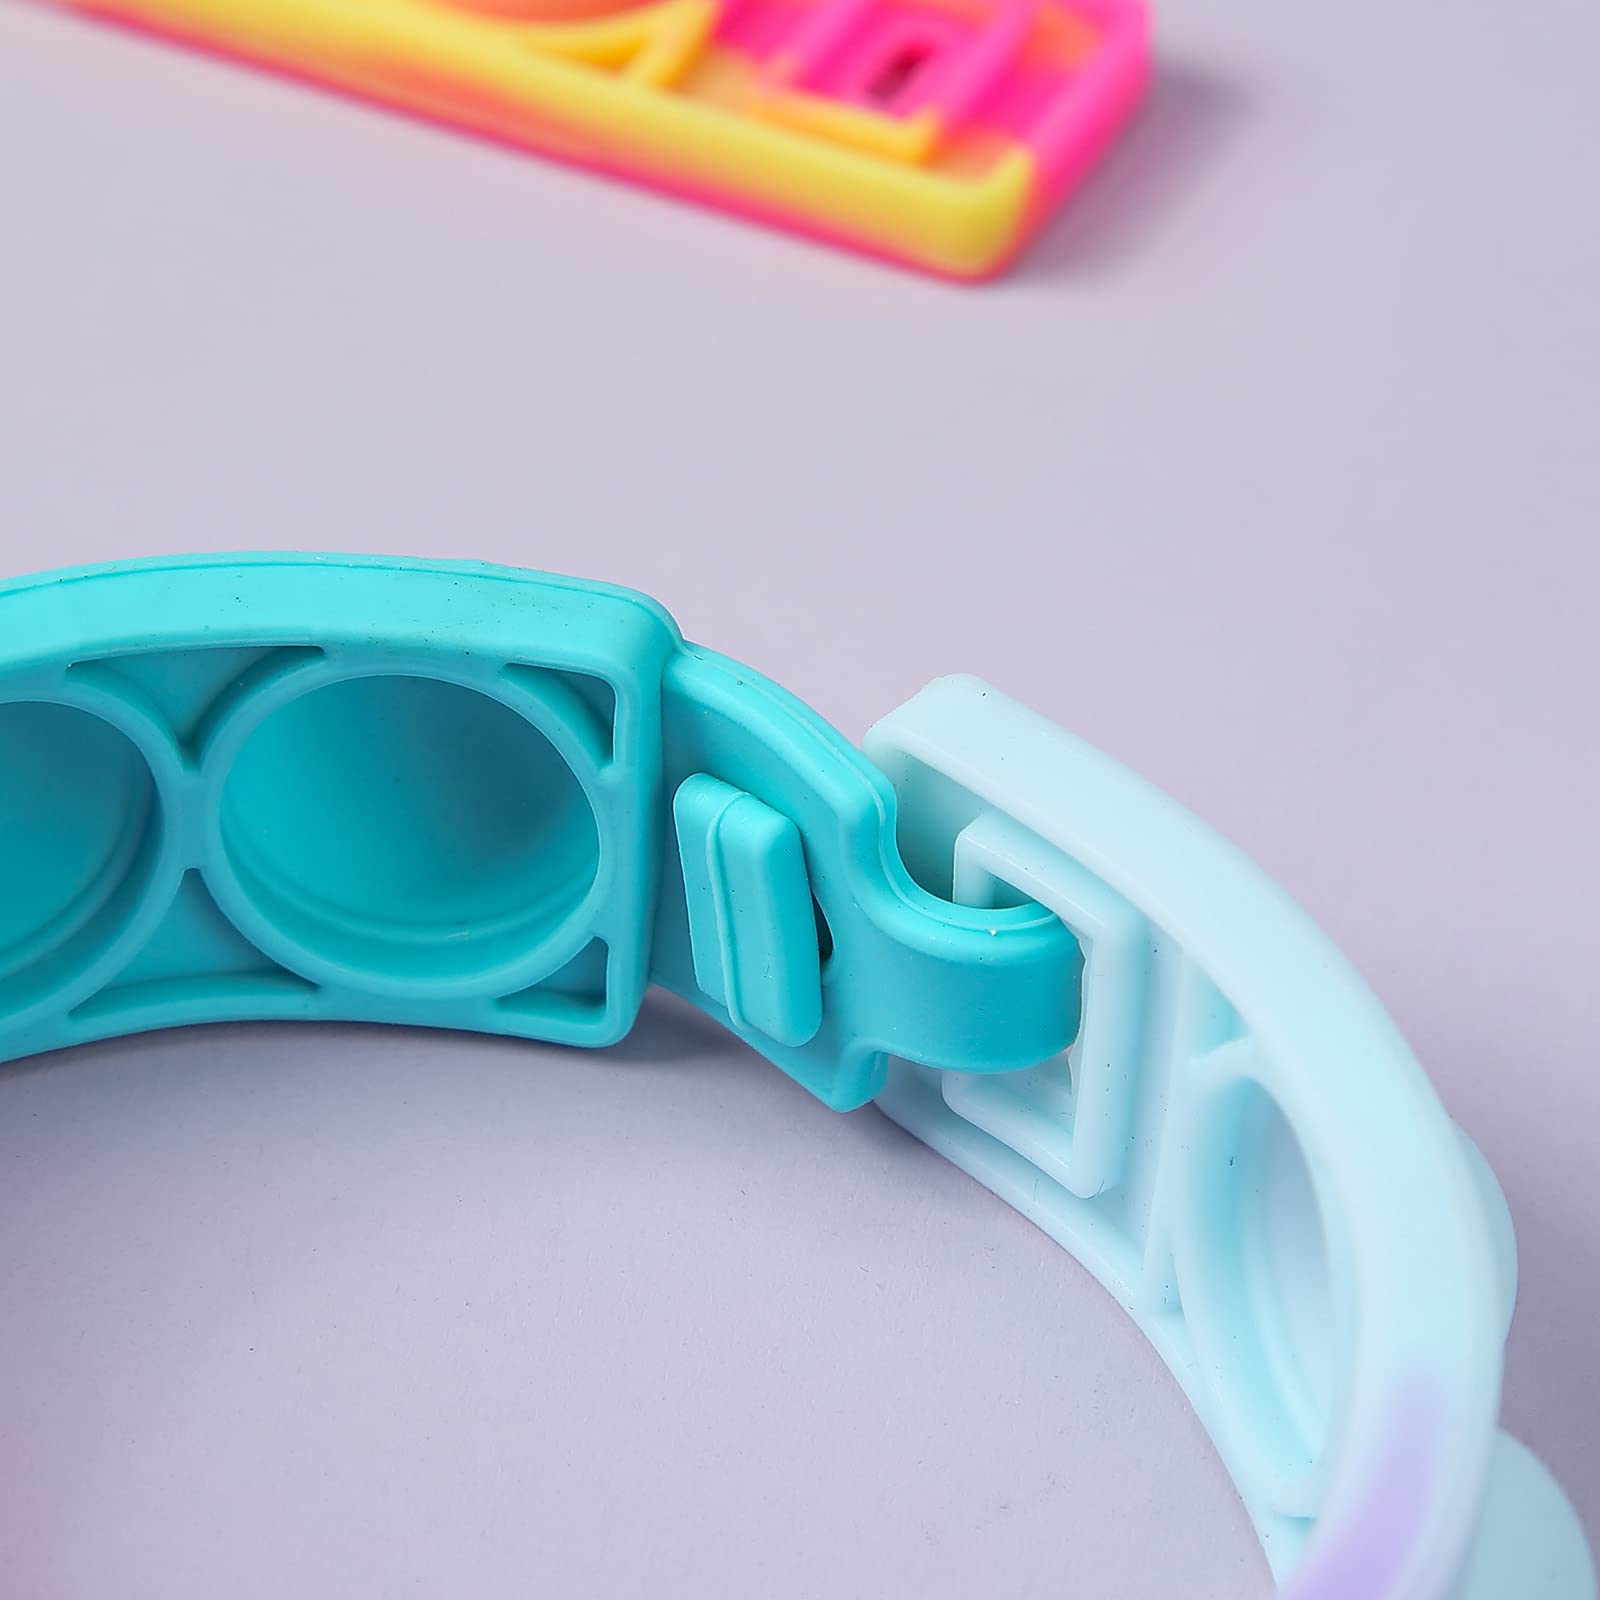 15 Pcs Multiplecolor Wristband Push Pop Bubble Sensory Fidget Silicone Bracelet Toy, Stress Relief Wristband Fidget Toys for Kids and Adults Anxiety Relief ADHD Autism Decompression